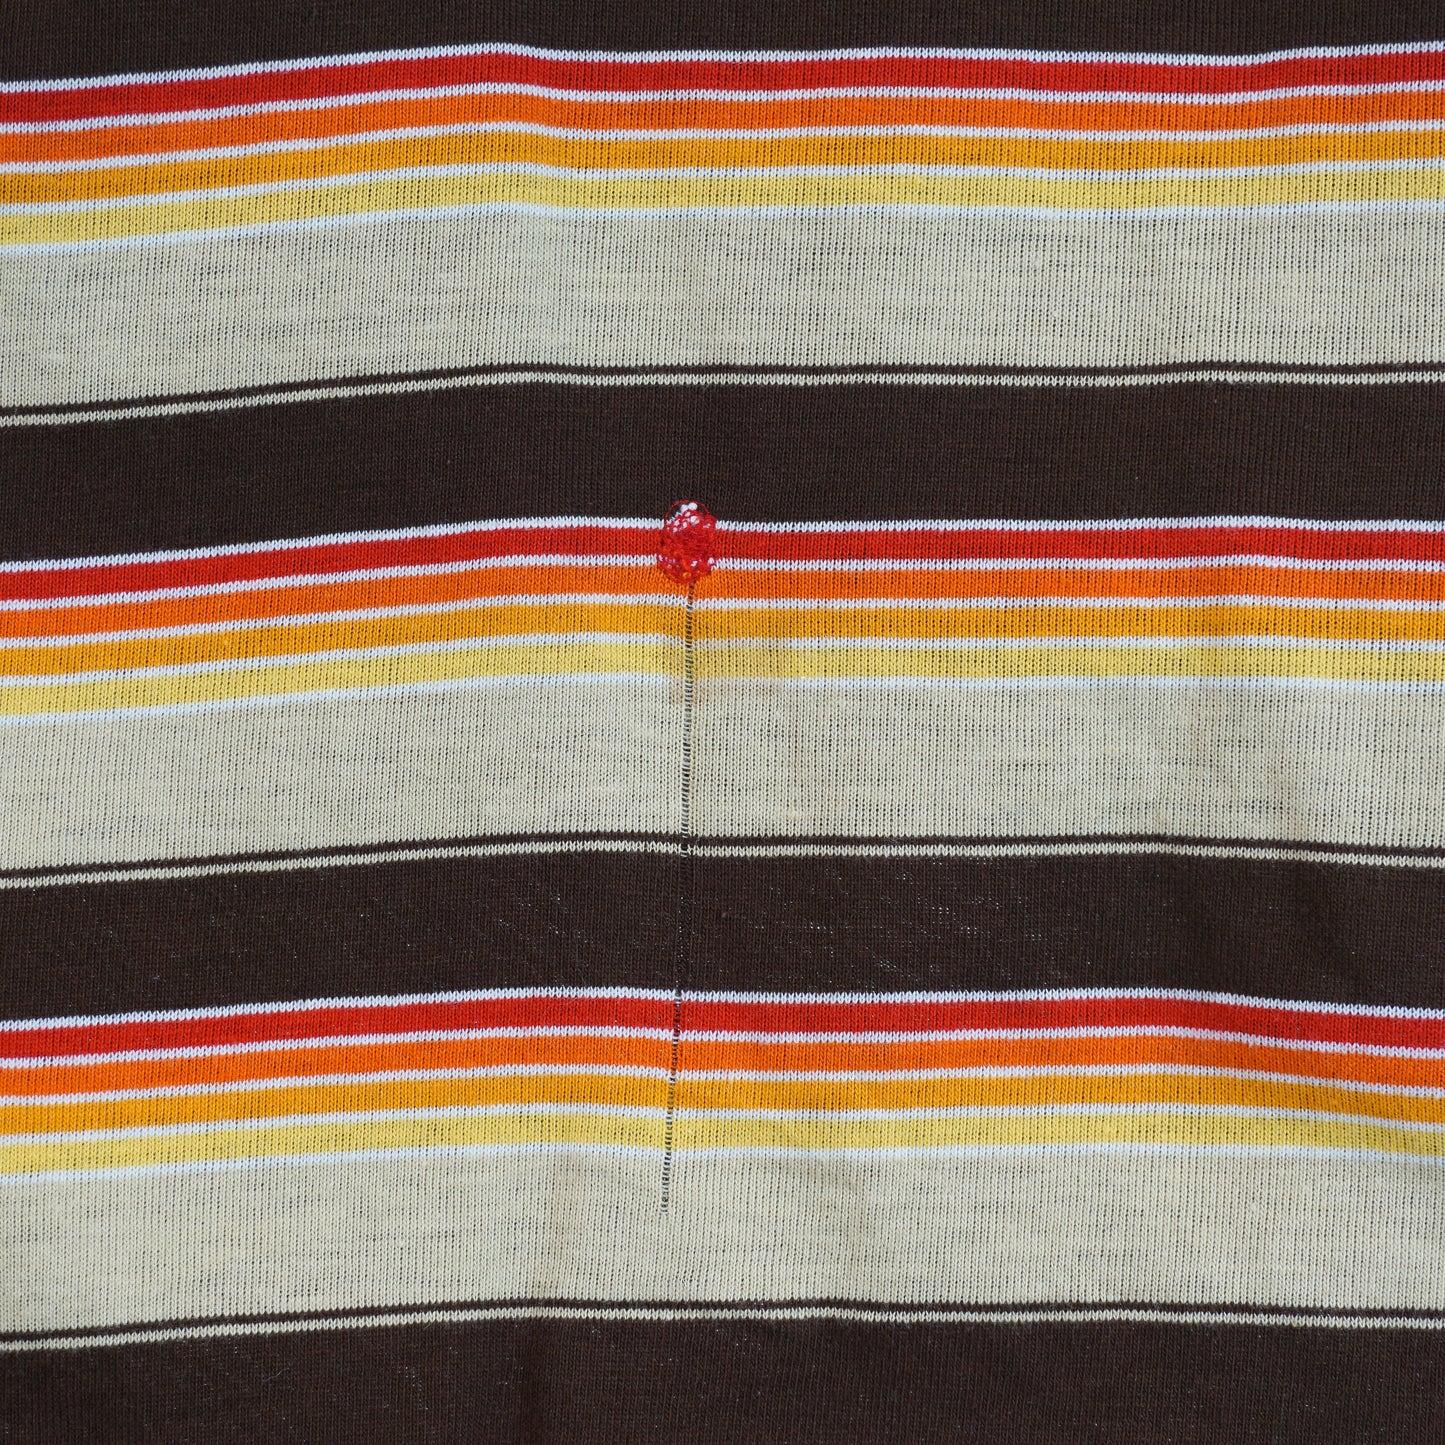 1970s Striped Patterned Long Sleeve (Women's S/M)